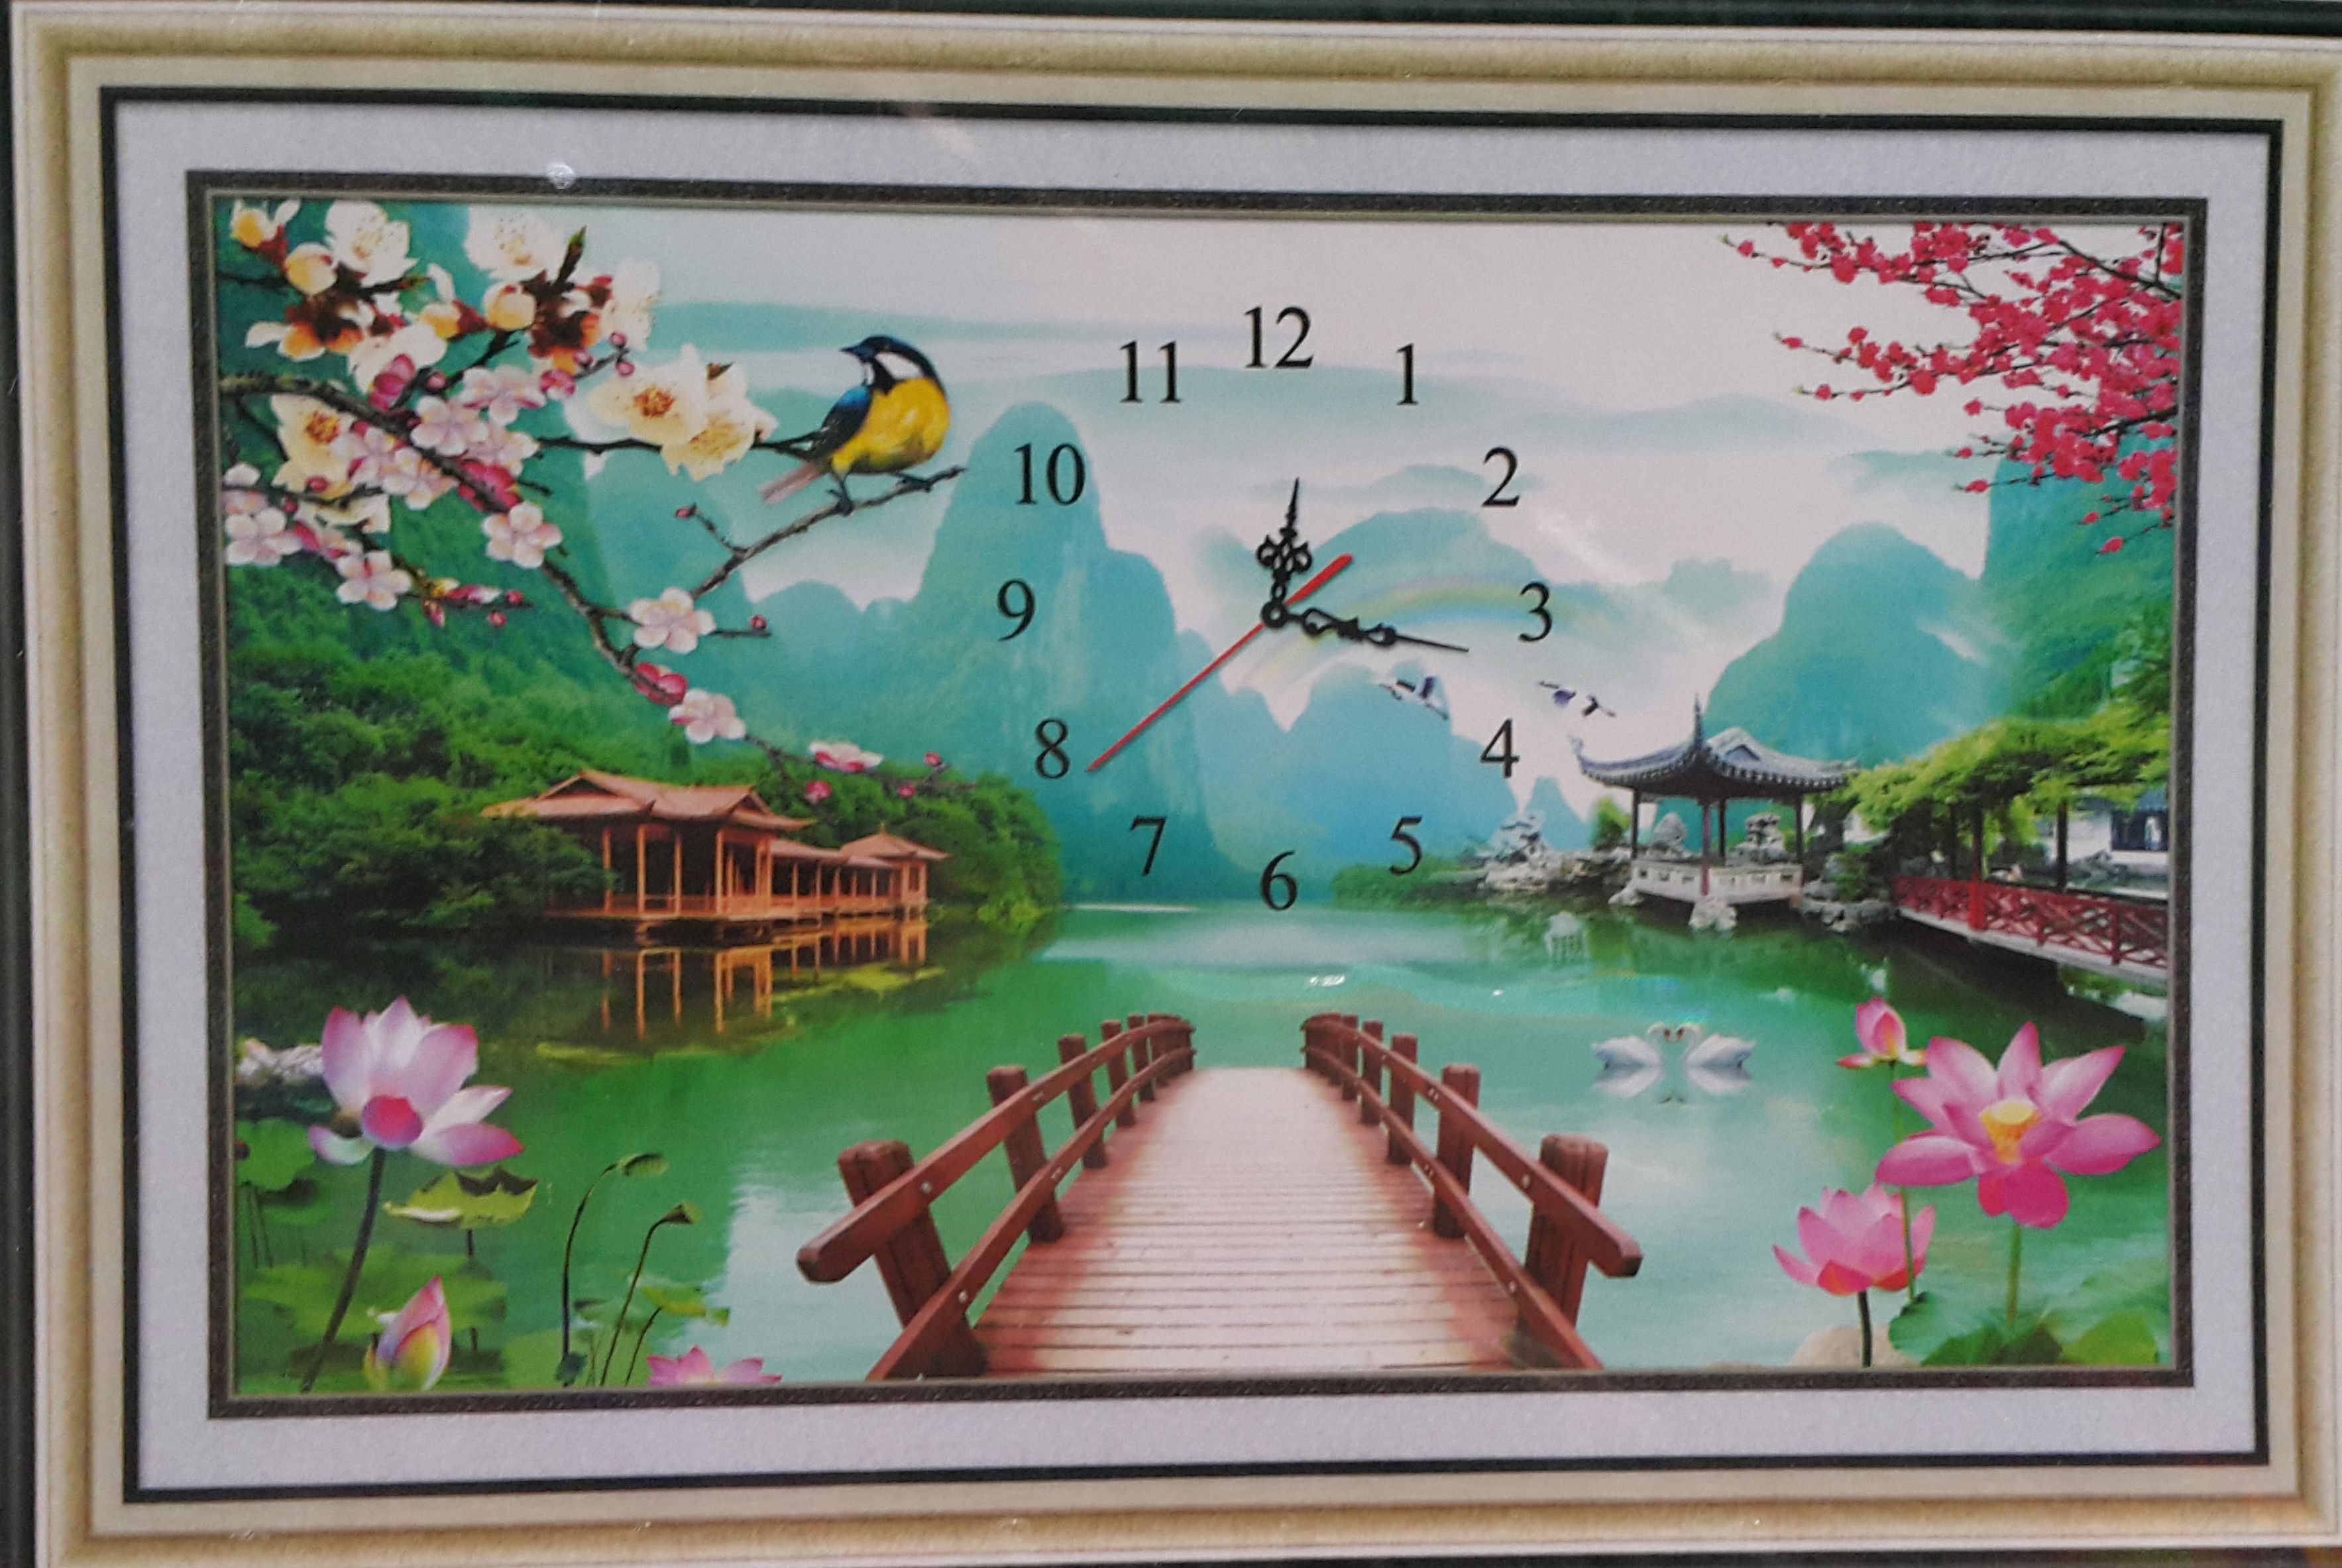 Tranh đính đá Phong Cảnh Đồng Hồ 3D - P254401 | Sàn thương mại điện tử của  khách hàng Viettelpost